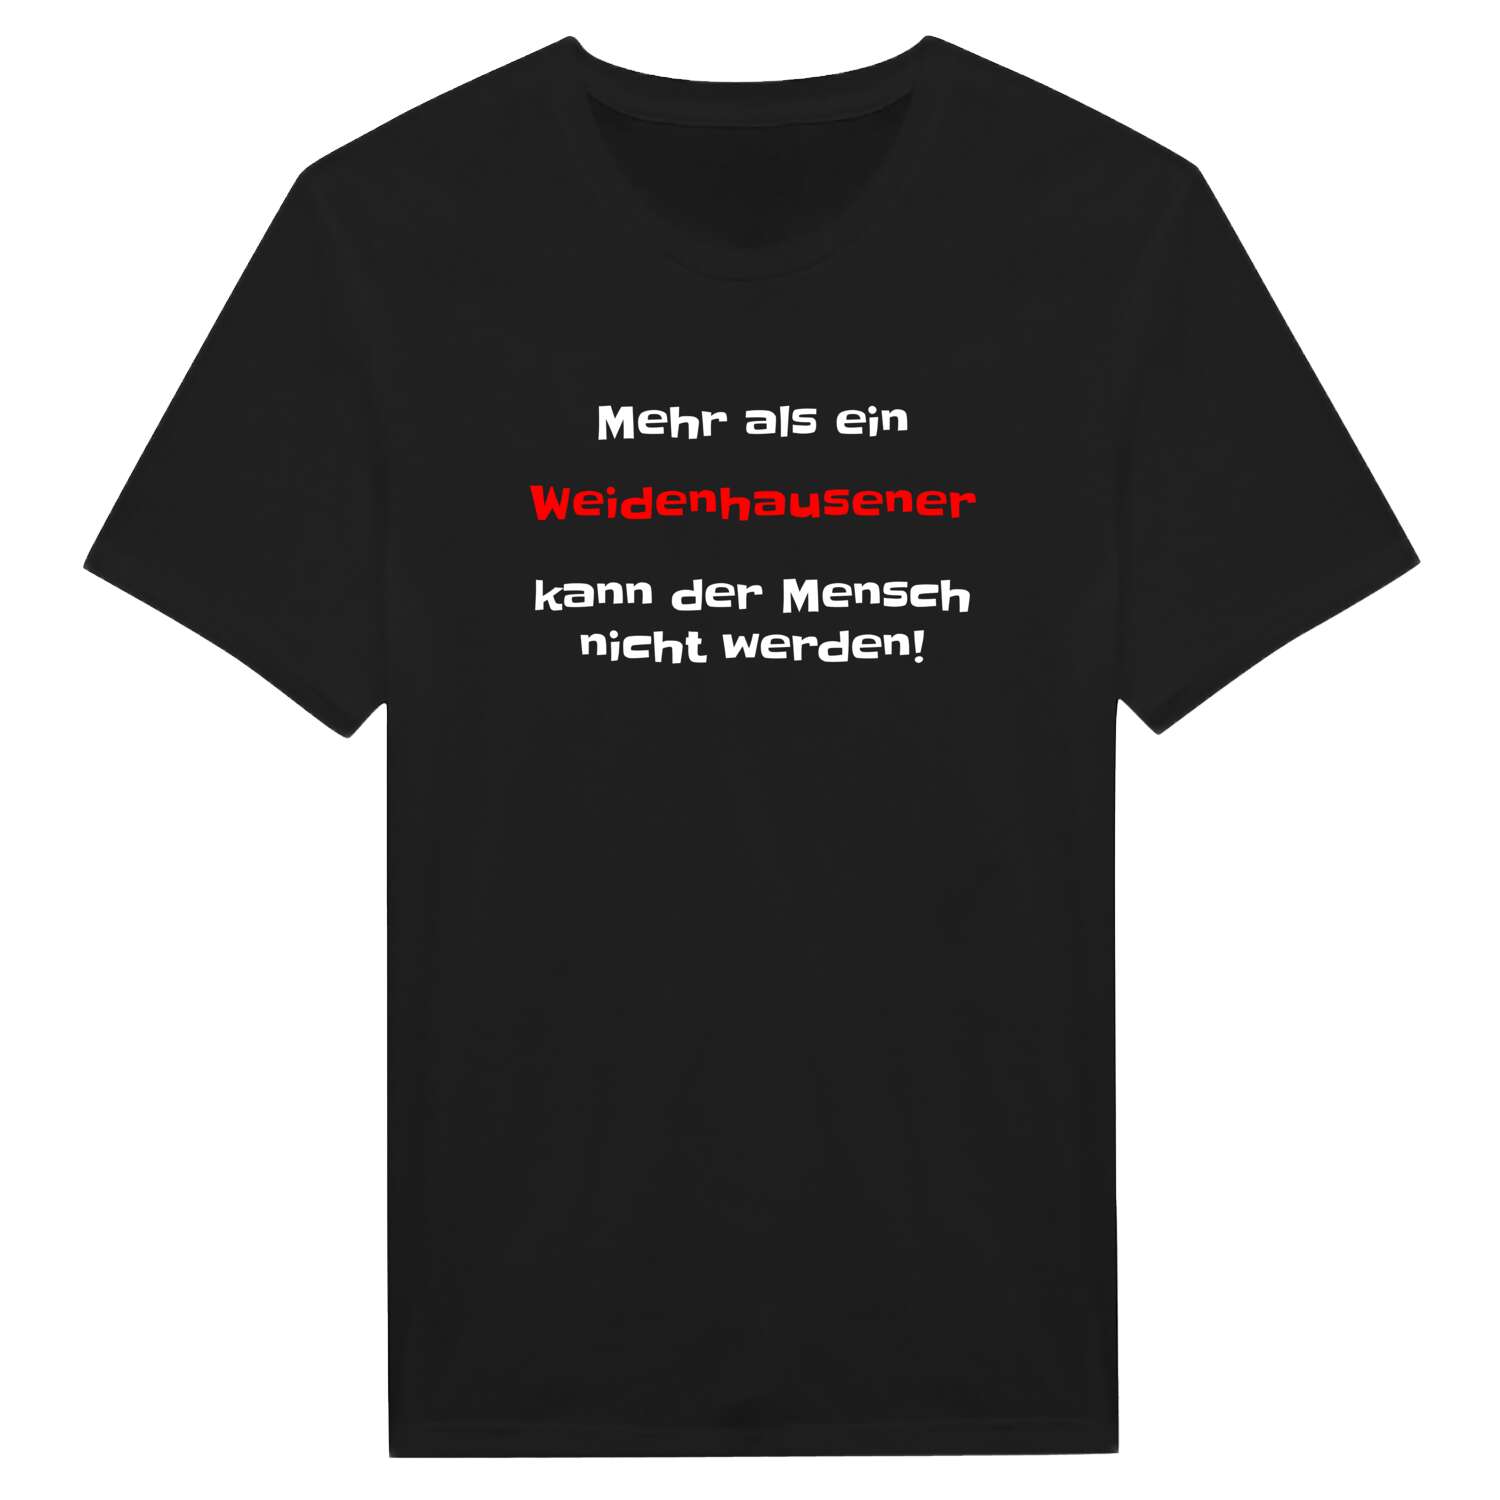 Weidenhausen T-Shirt »Mehr als ein«